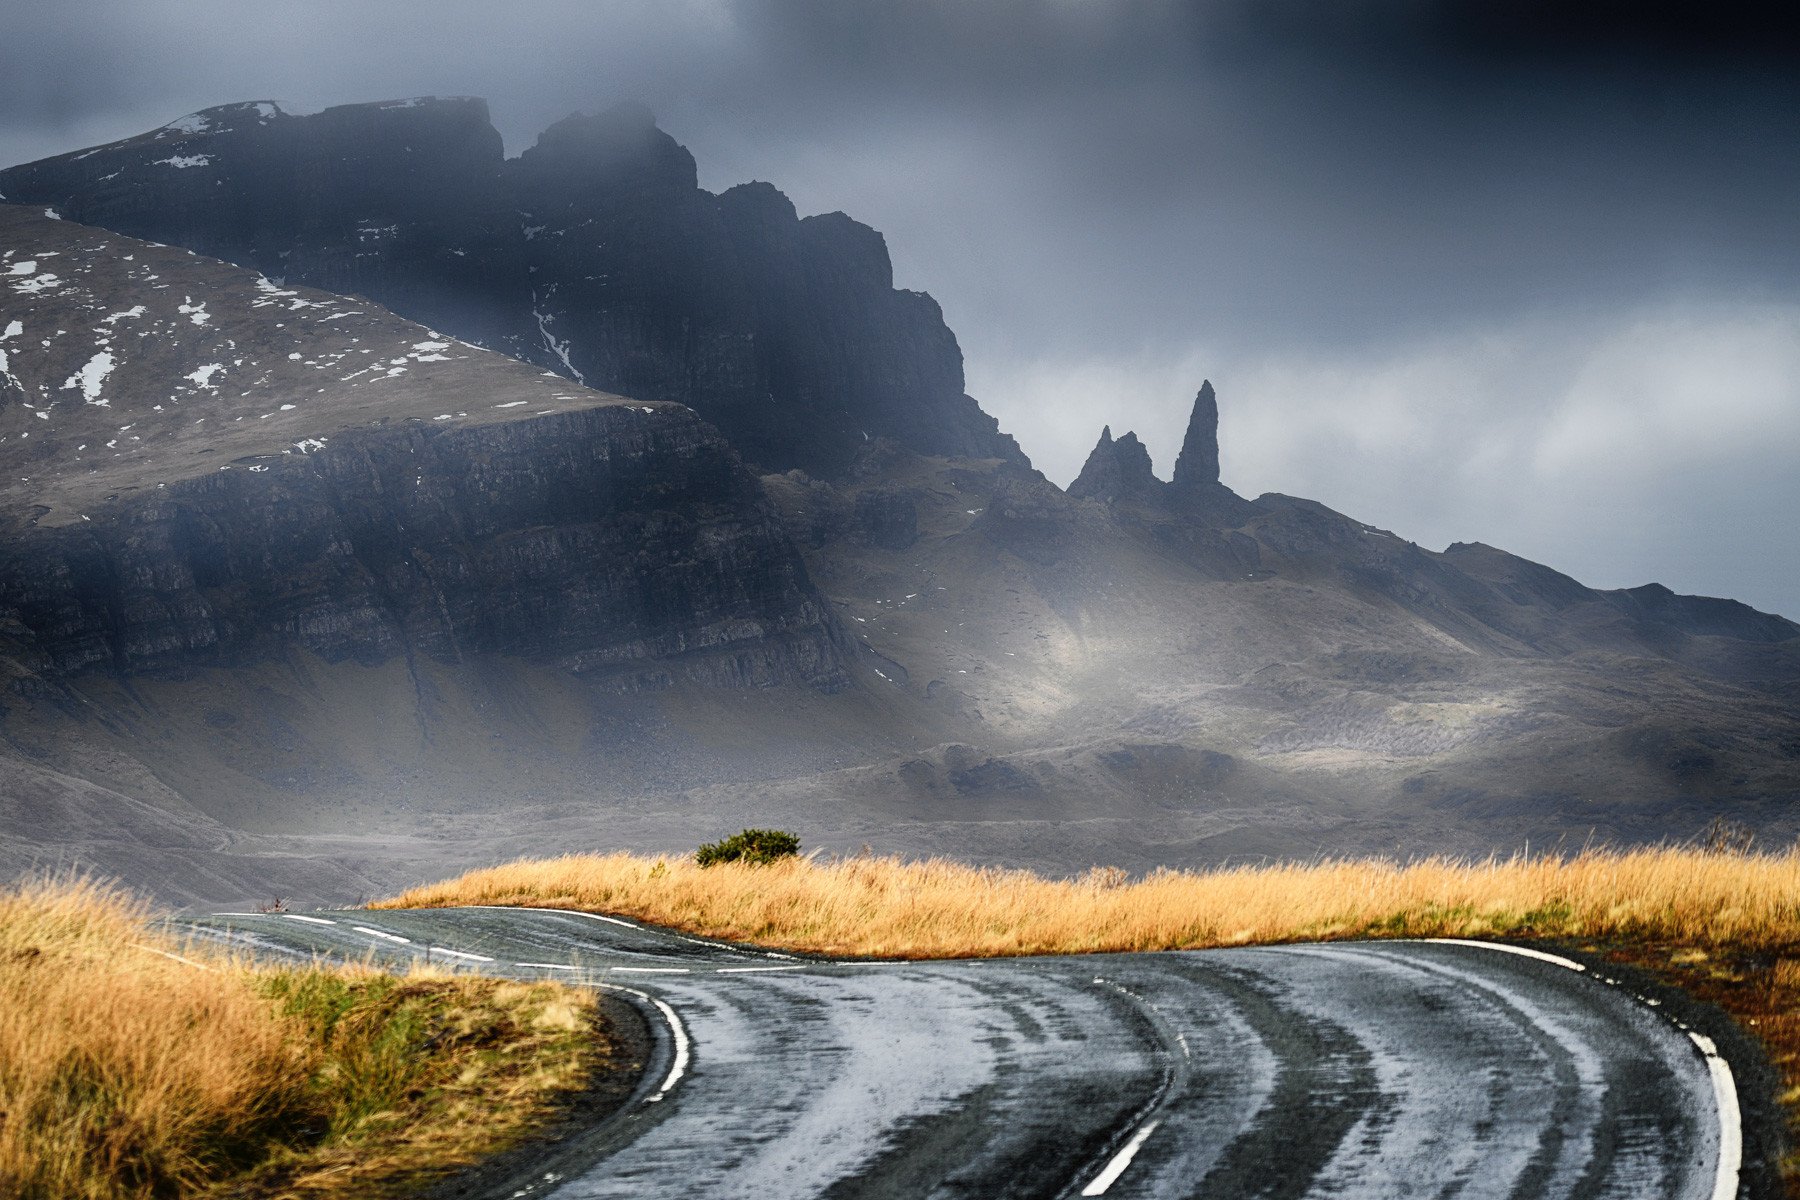 The Isle of Skye, Scotland